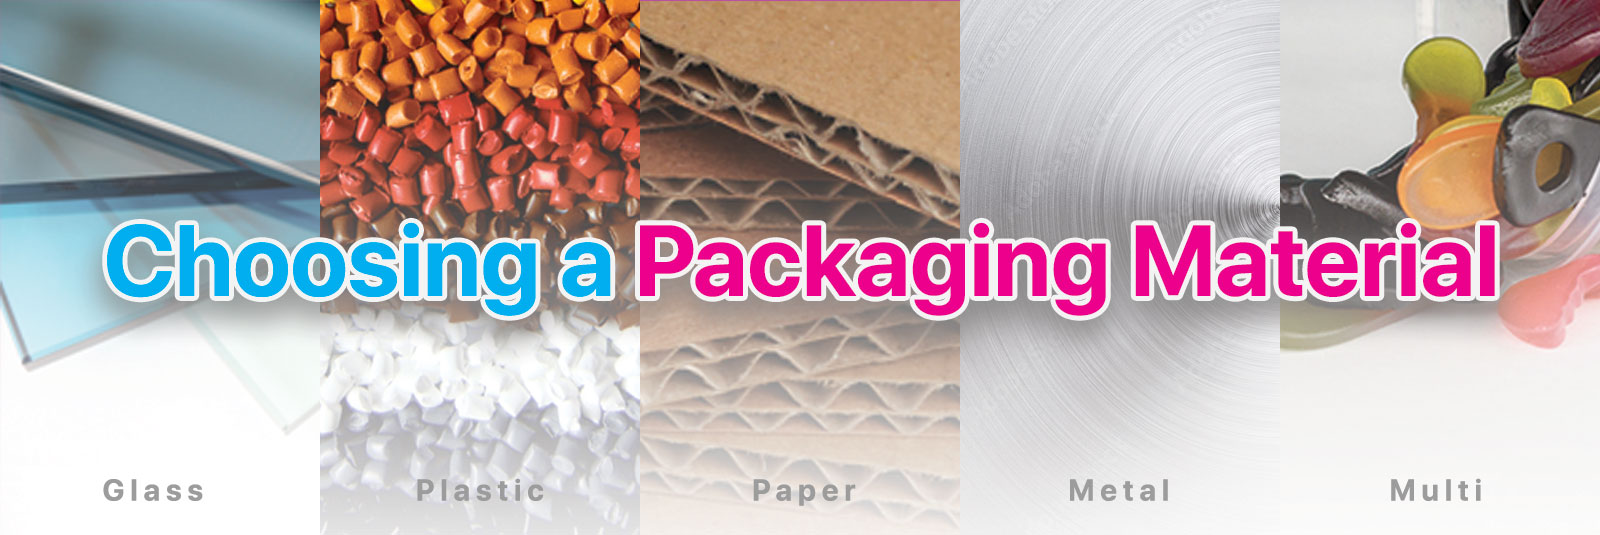 Choosing a Packaging Material